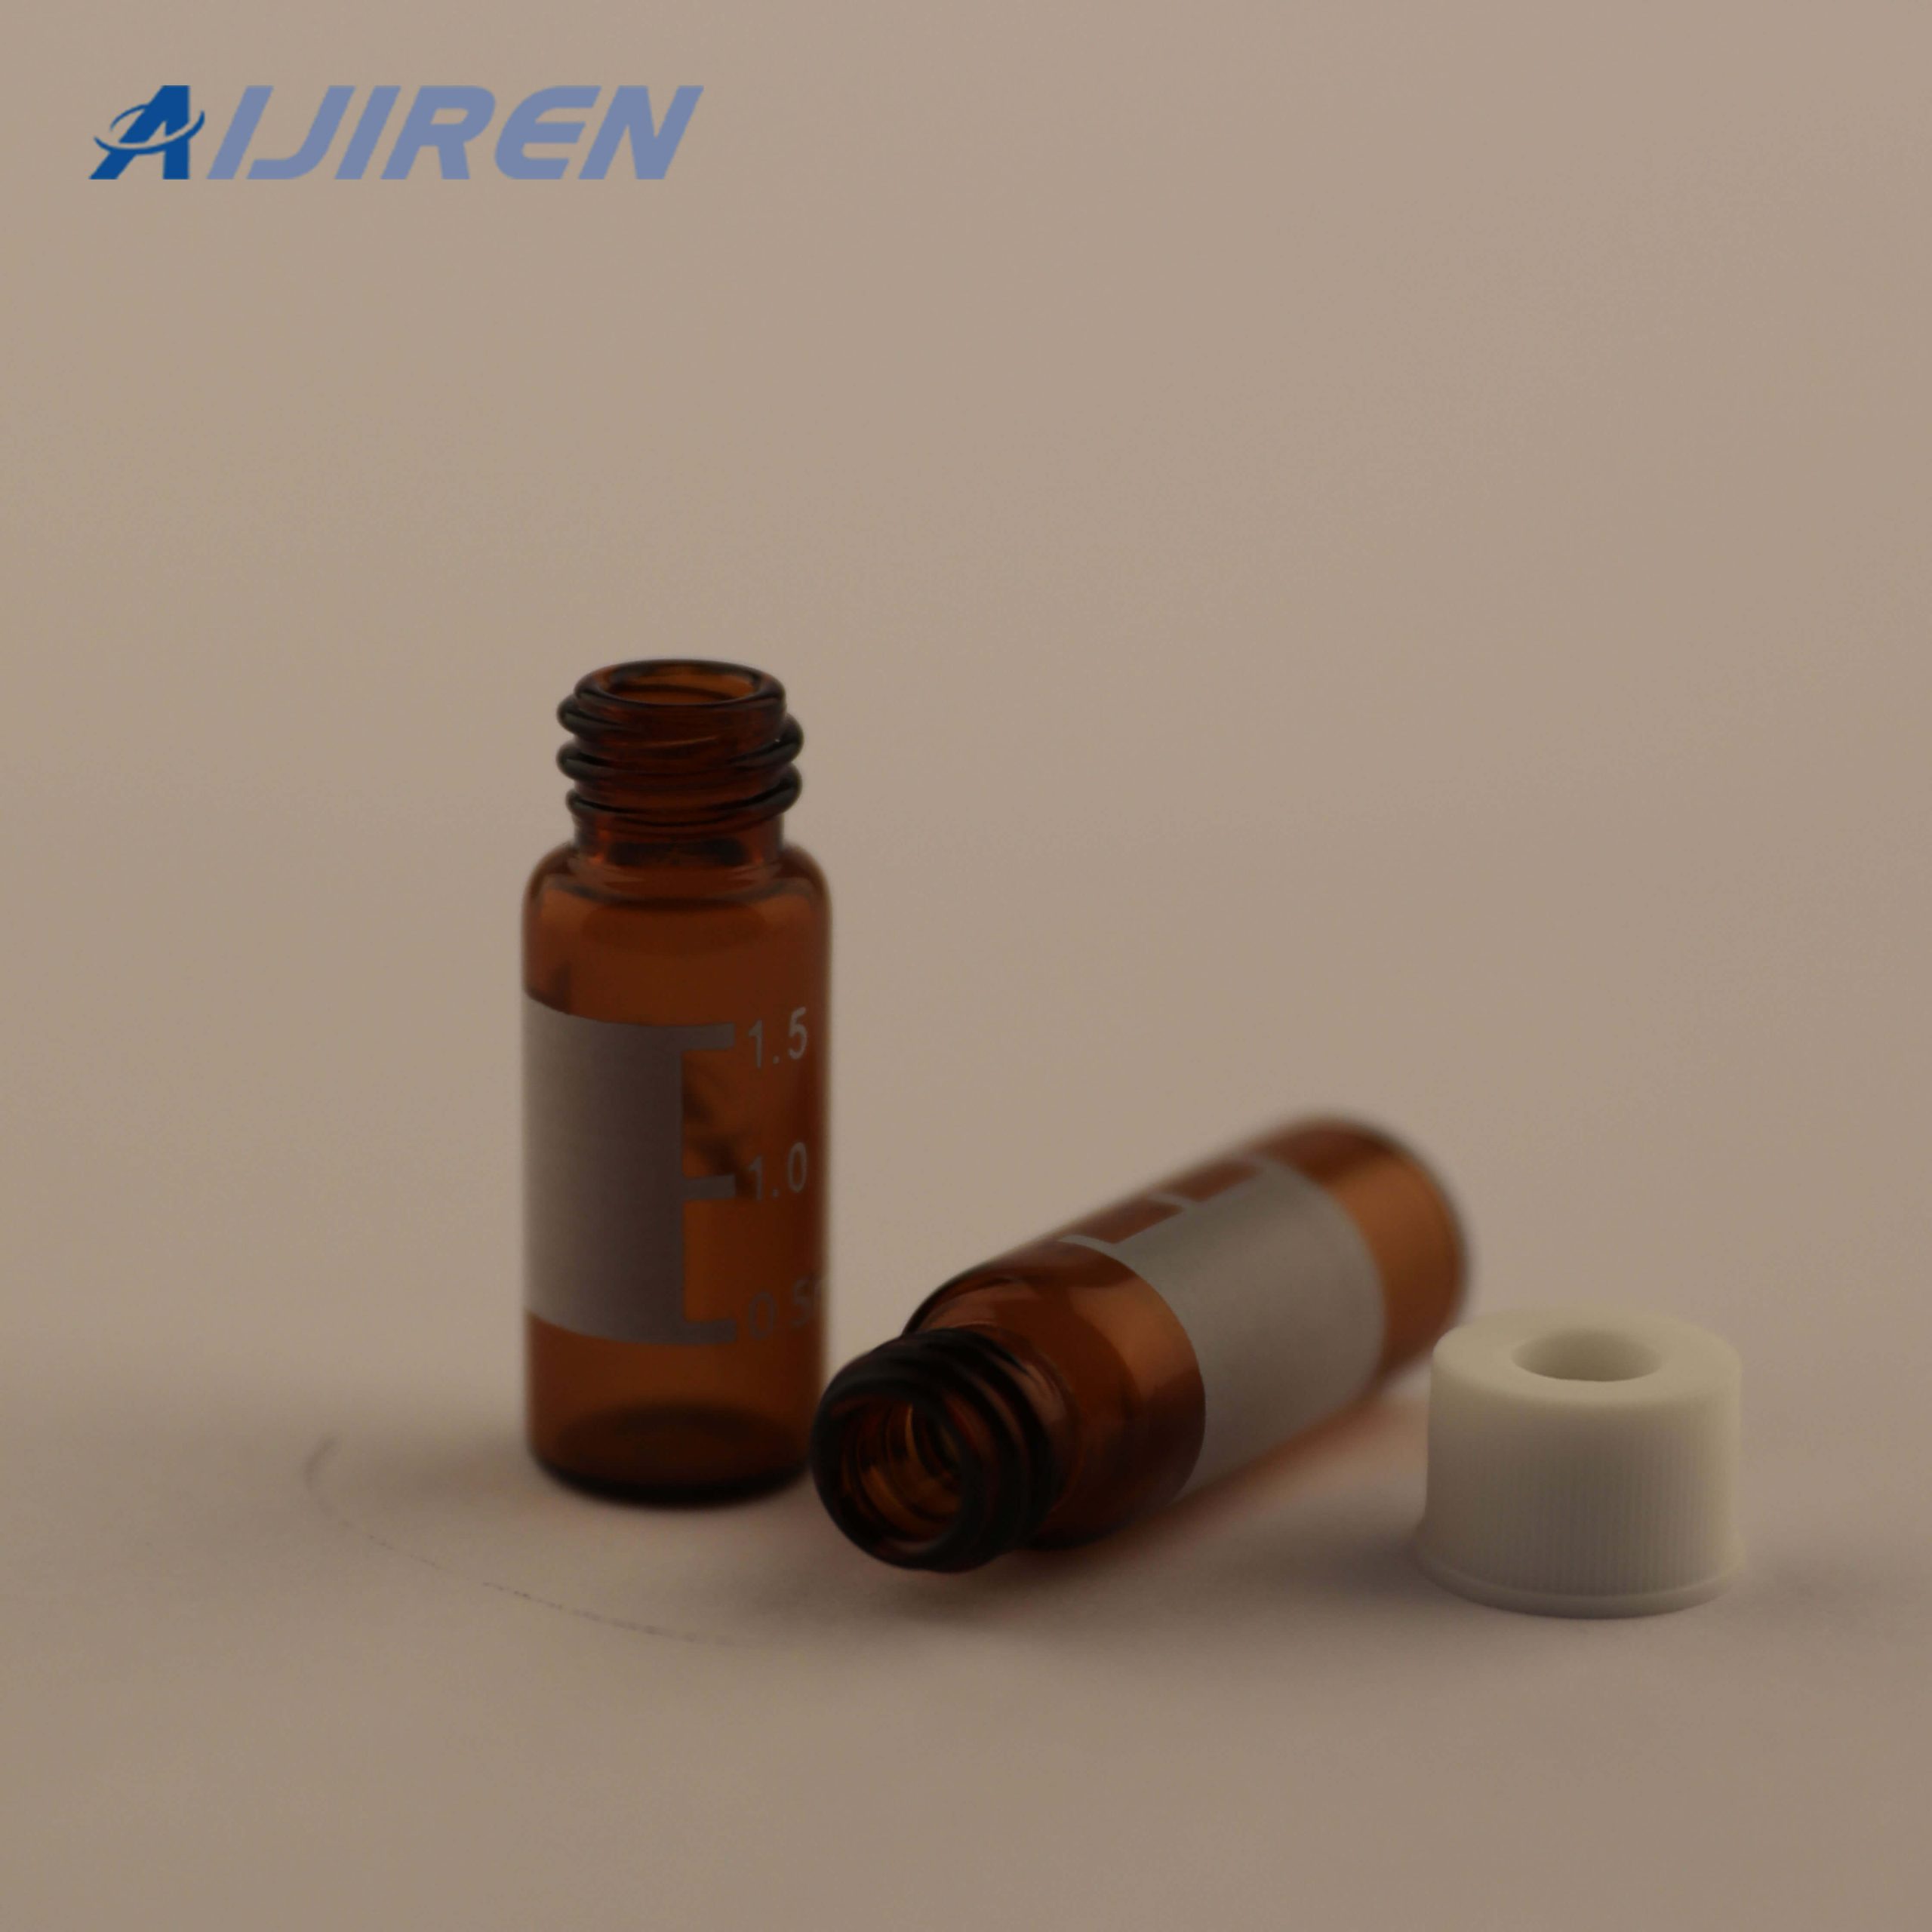 20ml headspace vial9mm Amber Glass Screw Top Vials for Aijiren